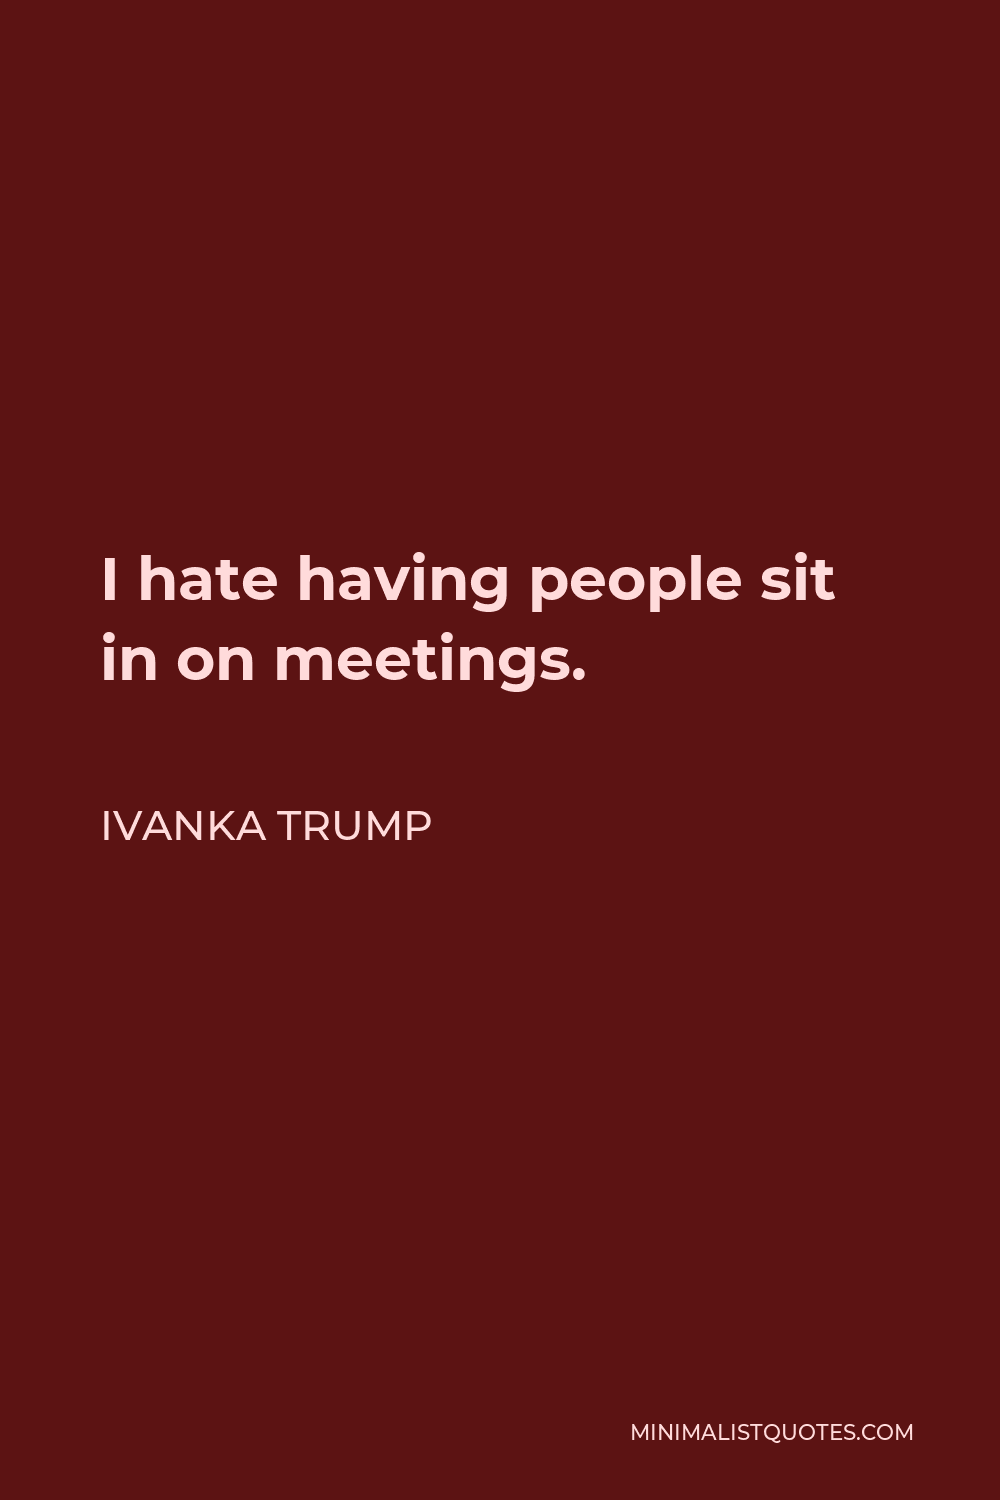 Ivanka Trump Quote - I hate having people sit in on meetings.